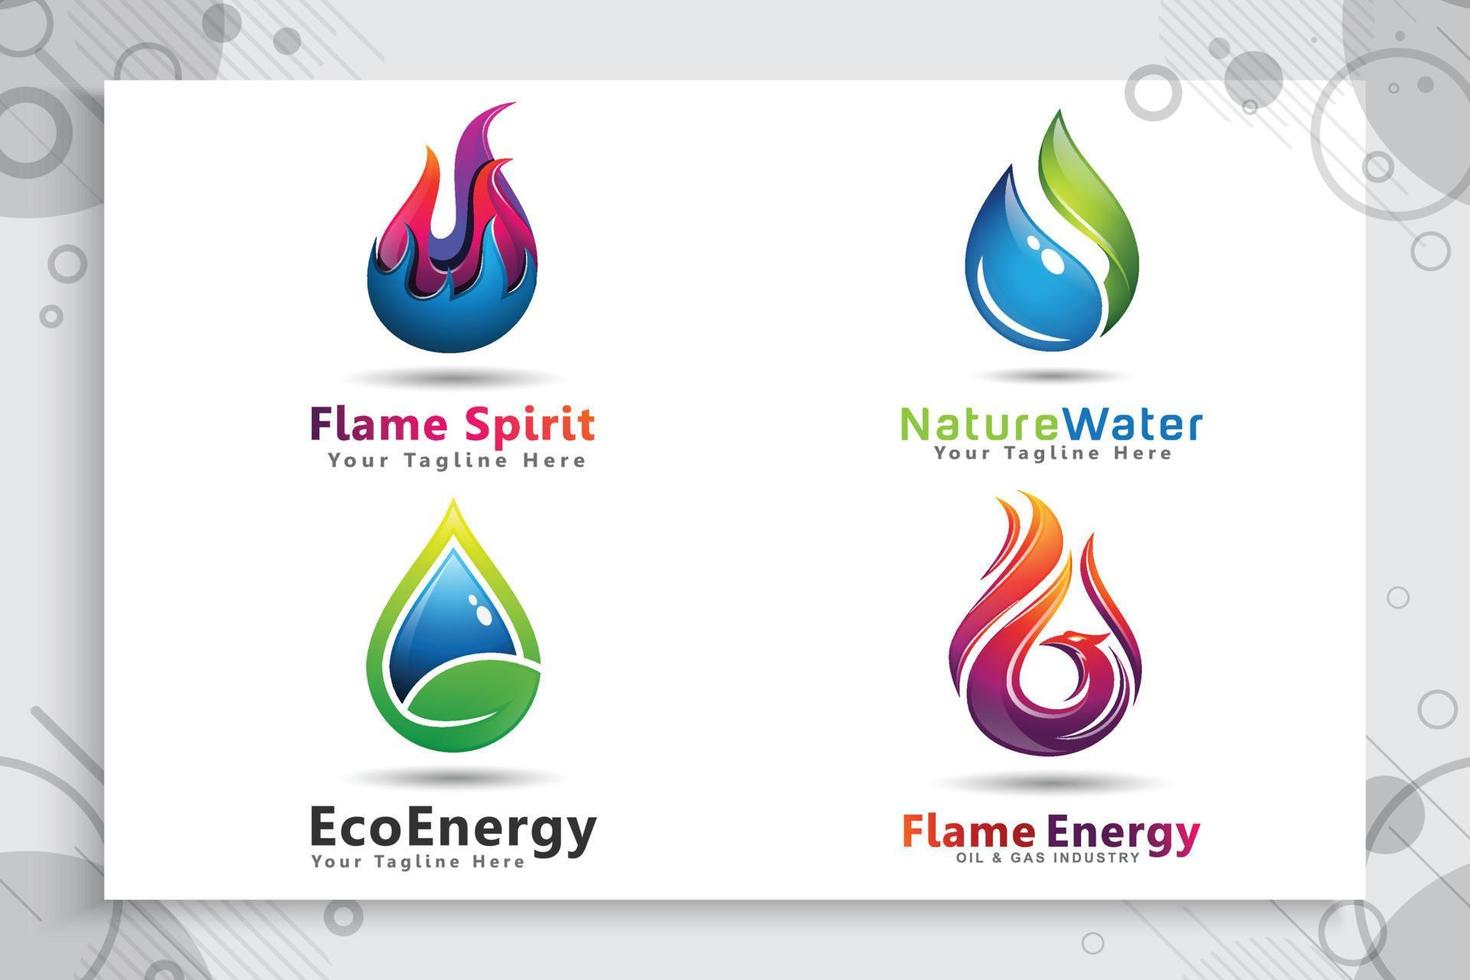 définir une collection de logo vectoriel 3d avec des concepts modernes comme symbole du pétrole et du gaz, illustration de l'utilisation du pétrole et du gaz pour la société modèle d'énergie et d'industrie.